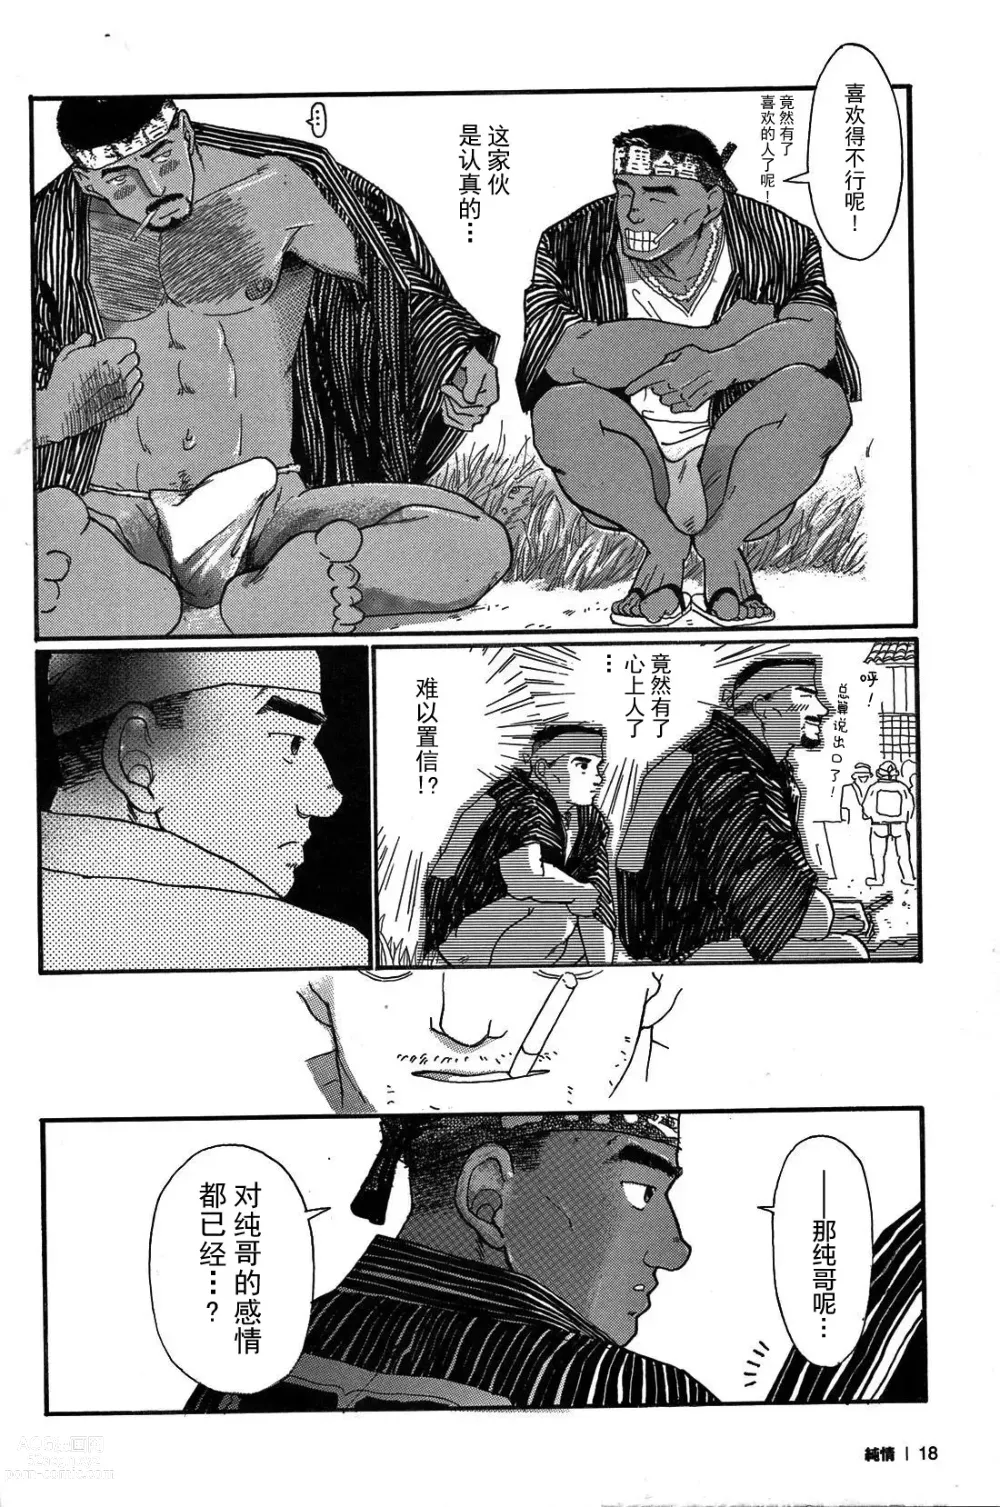 Page 17 of manga 纯情!! 第一章 「纯情」